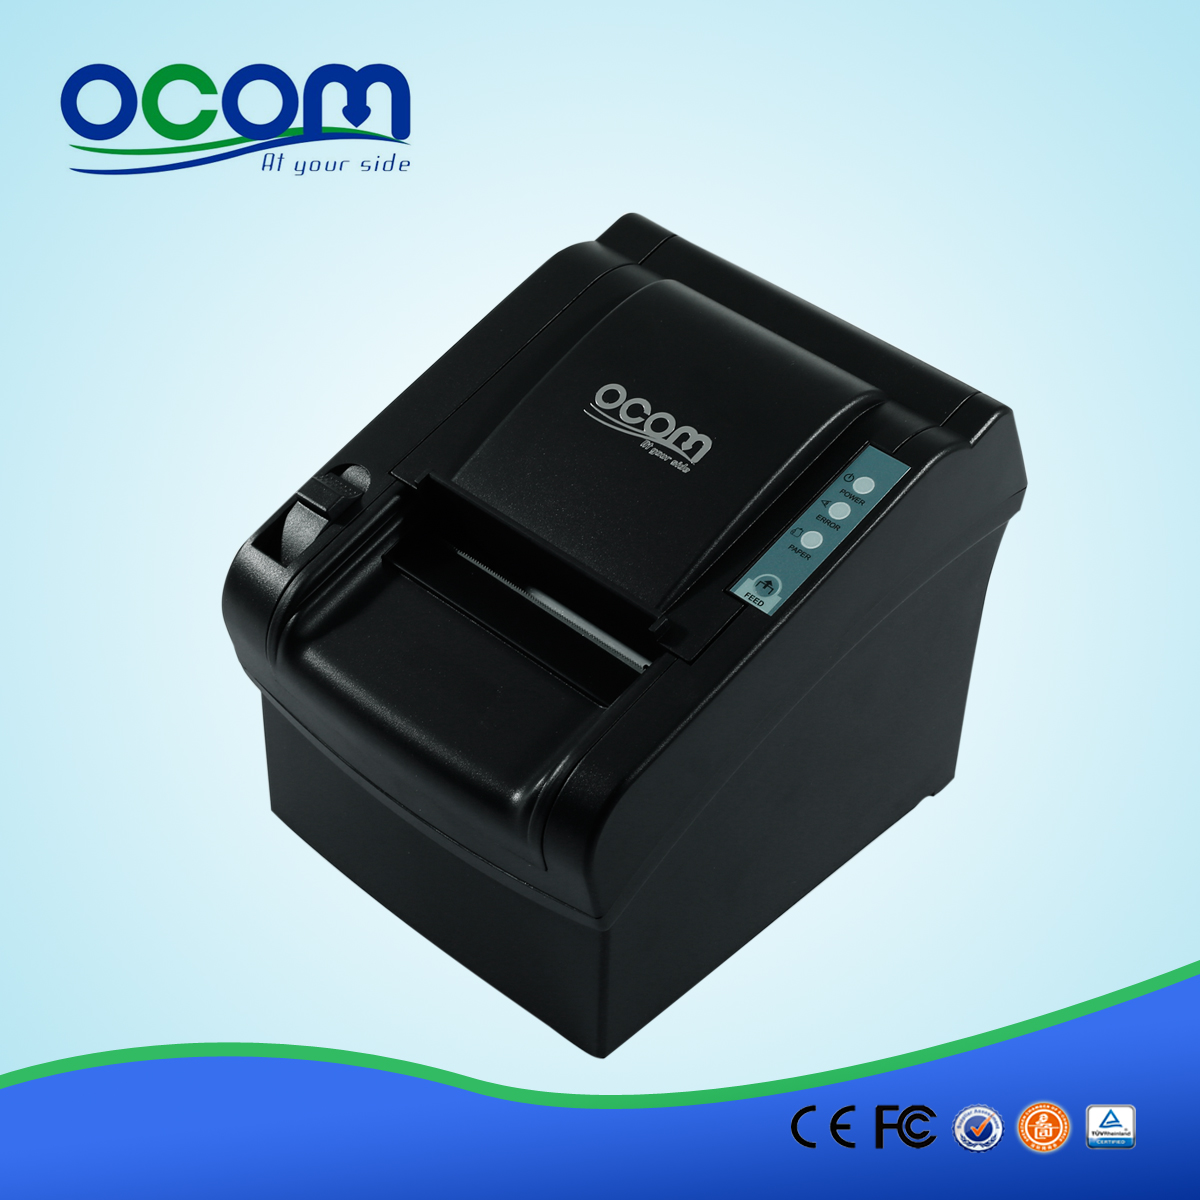 OCPP-802: approvvigionamento affidabile conveniente meccanismo di stampa a ricezione, stampante termica 80 millimetri